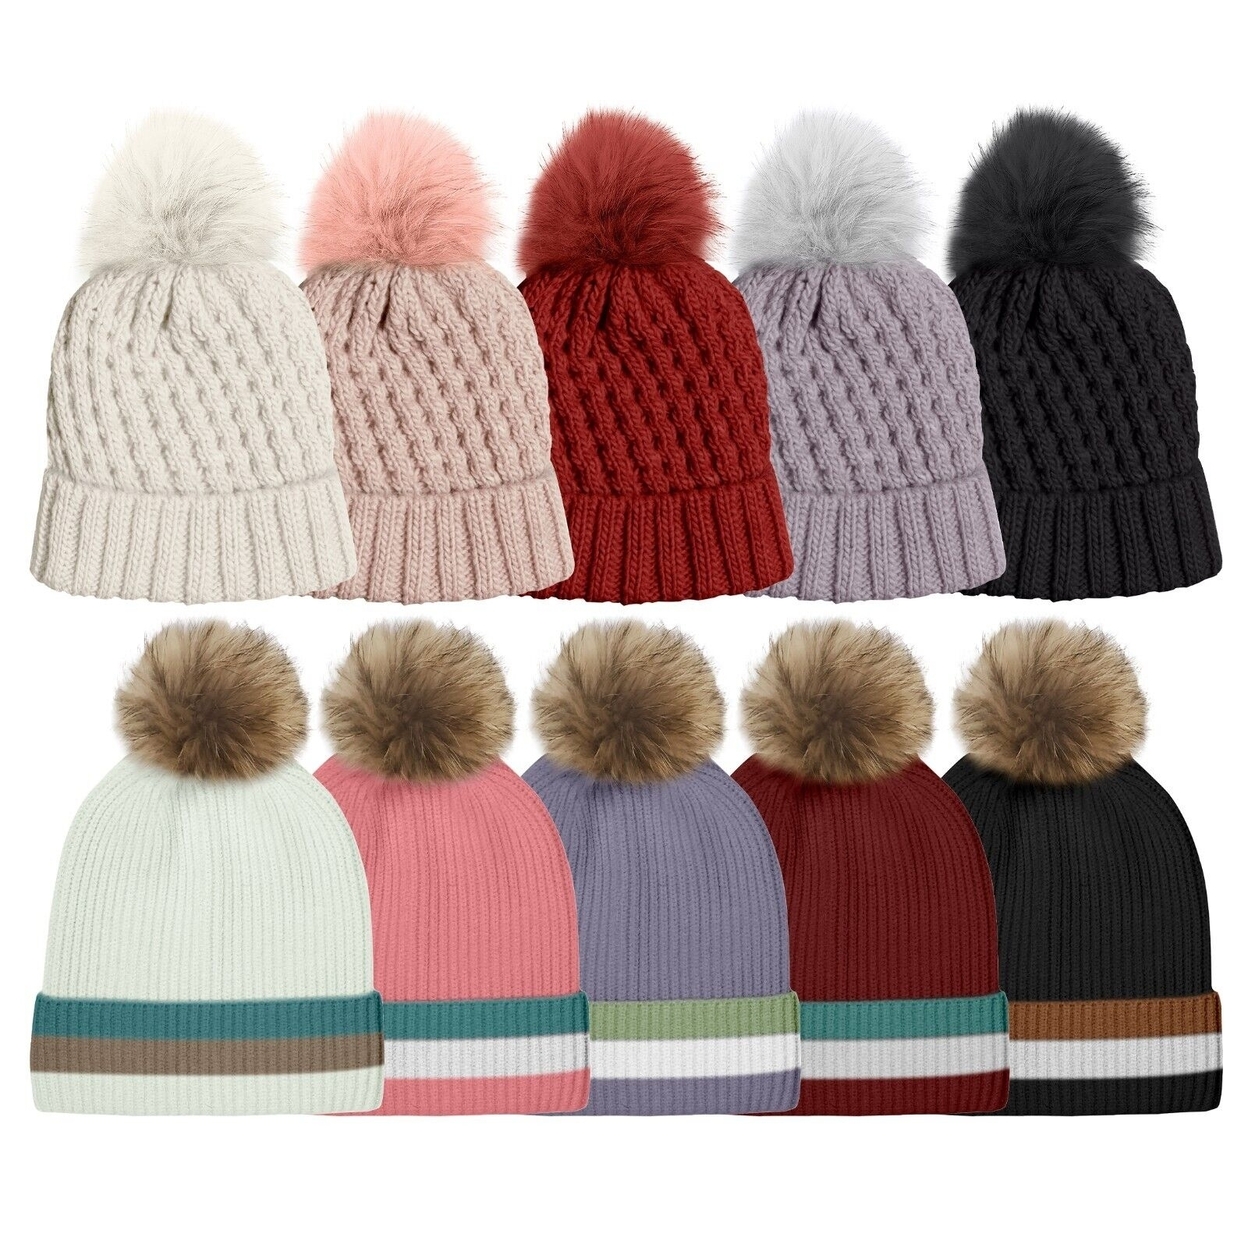 Multi-Pack: Women's Ultra-Soft Winter Warm Knit Feel Pom Pom Hat W/ Faux Fur Lining - Solid, 2-pack